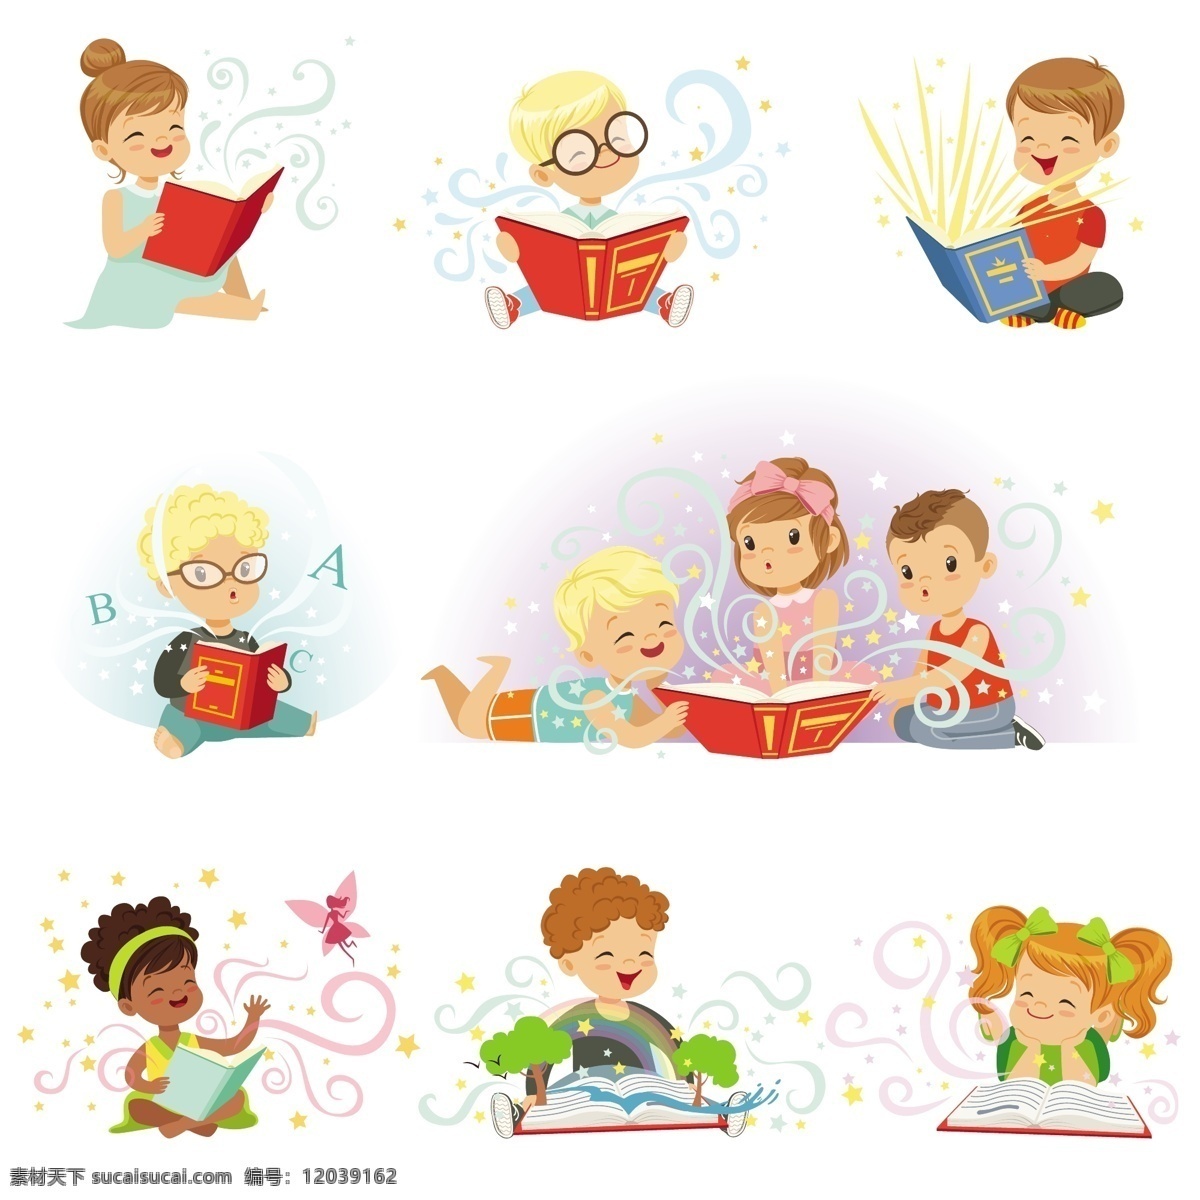 读书 学习 孩子 卡通 矢量 男孩 女孩 看书 书本 发光 知识 教育 儿童 可爱 卡通儿童 动漫动画 动漫人物